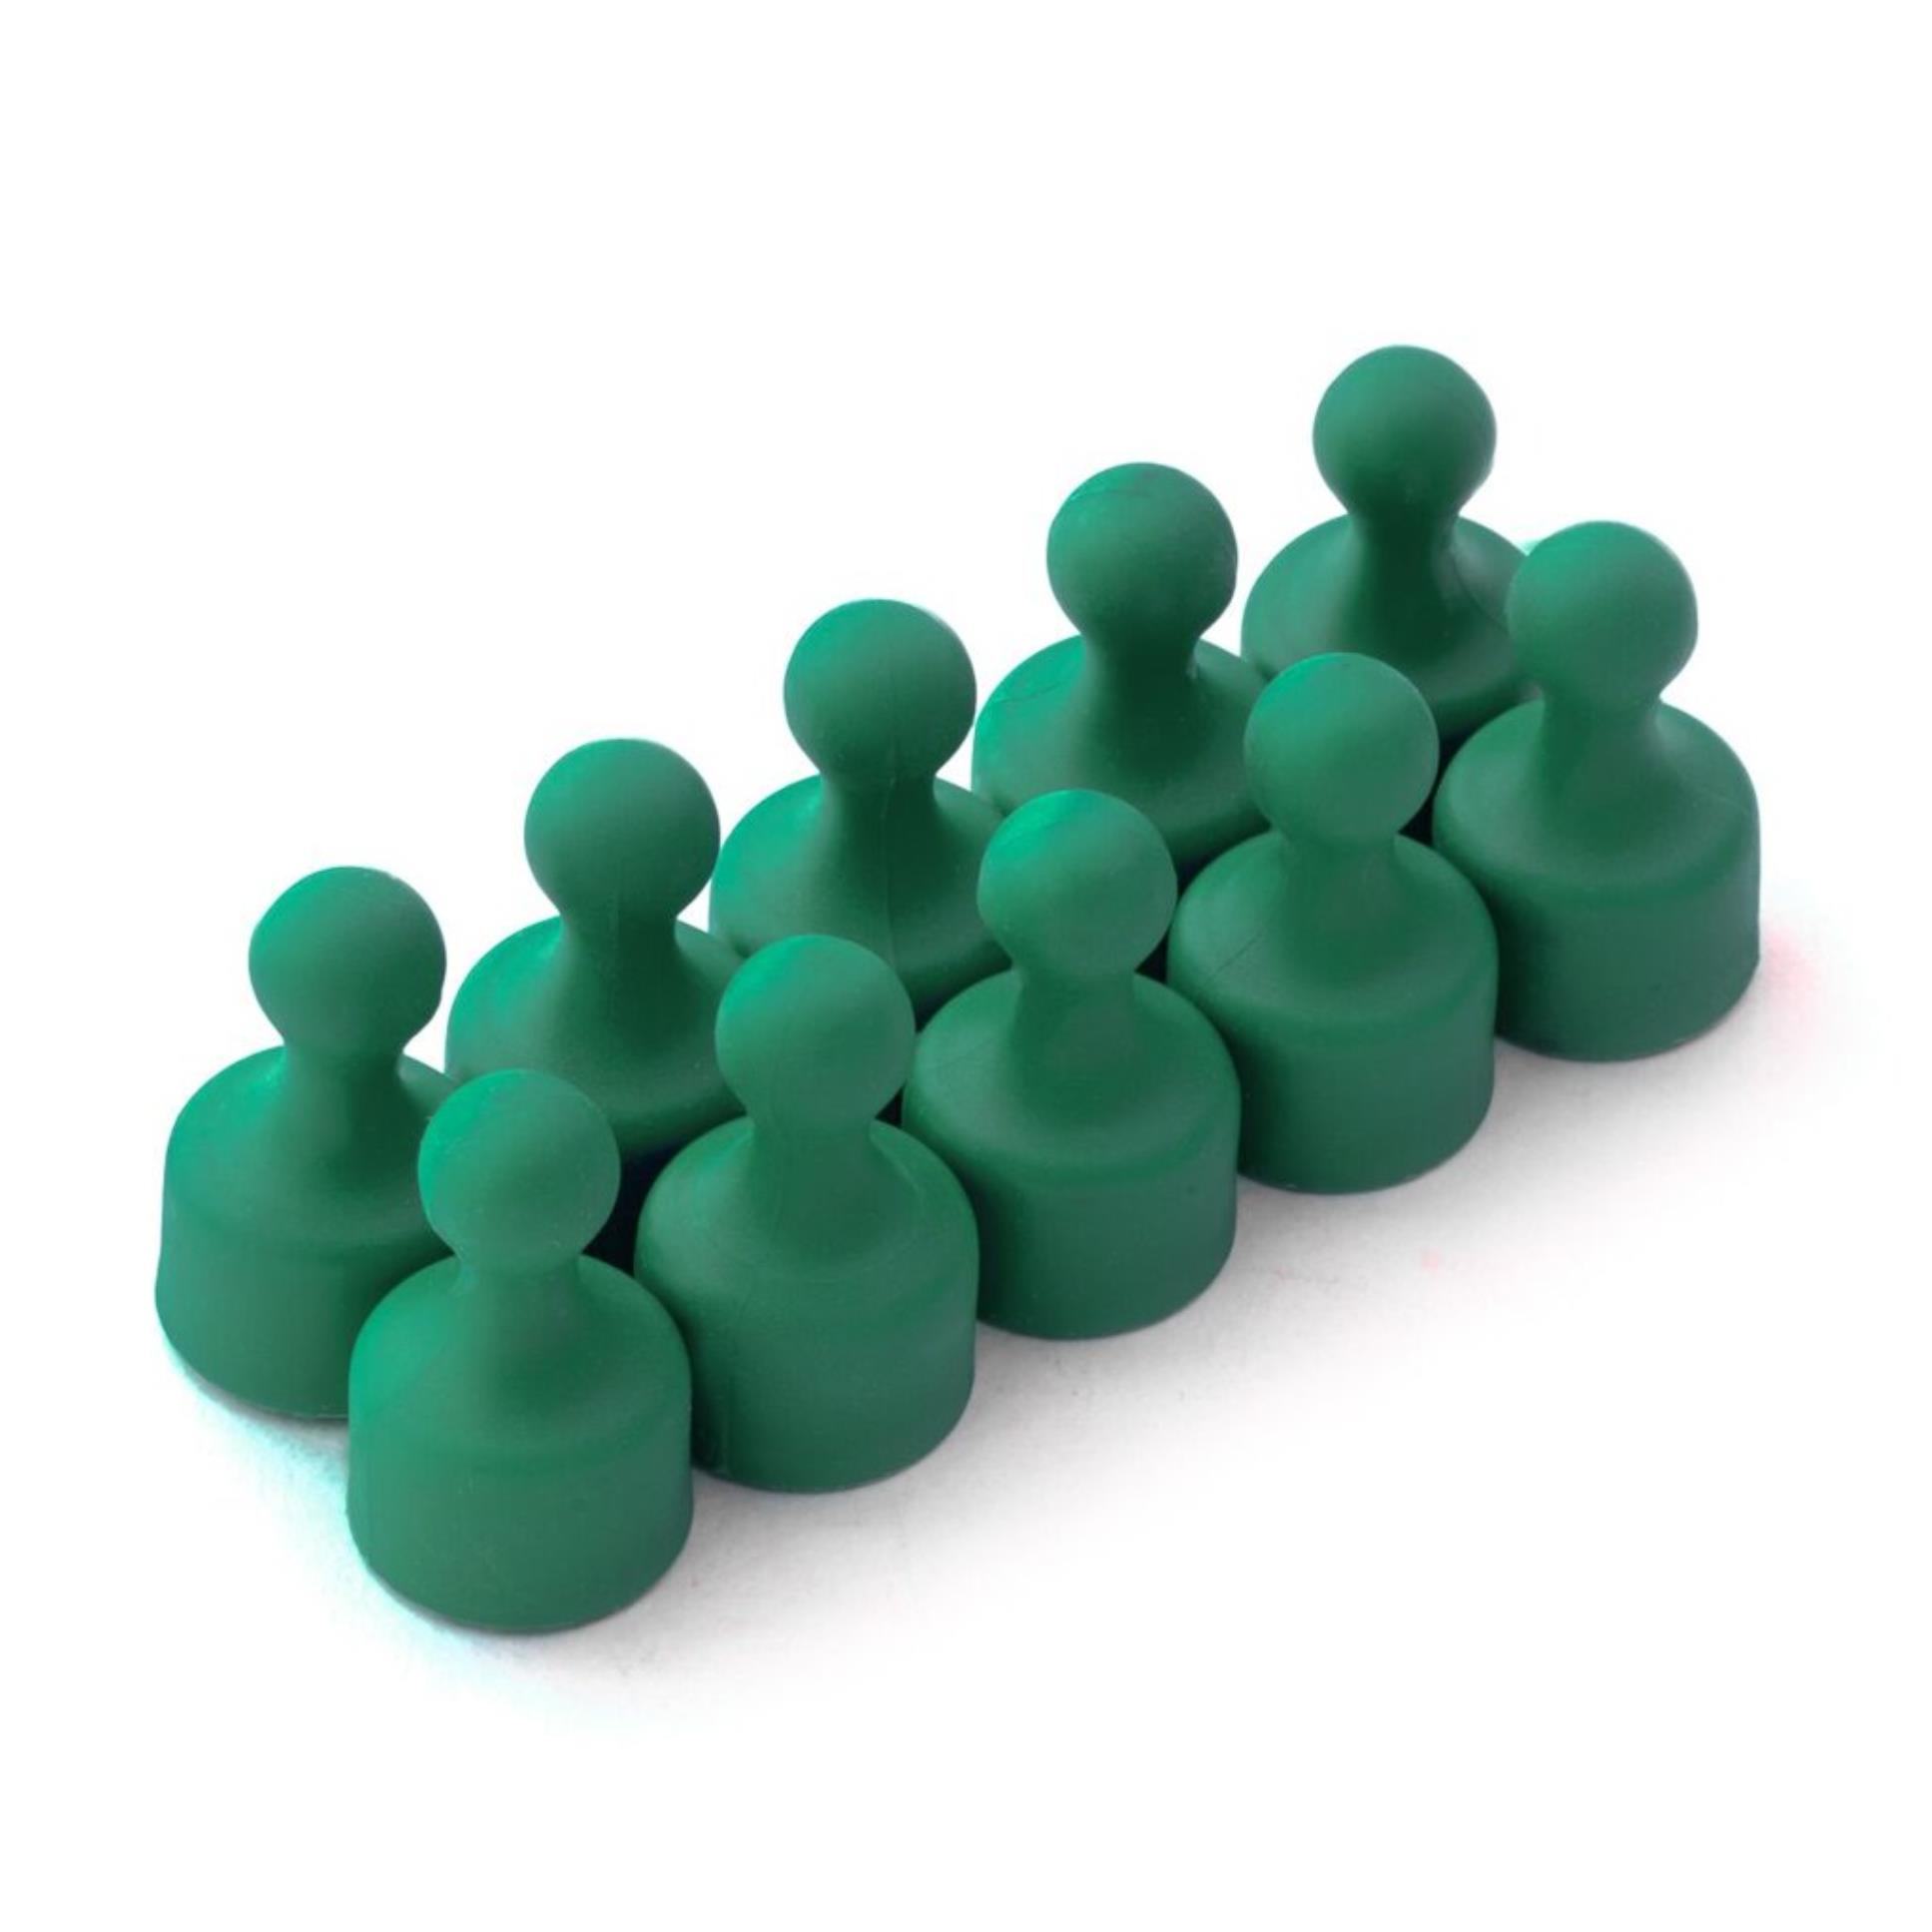 Spoko Magnetické figurky M4 - neodymové, 12 × 20 mm, zelené, 2 ks